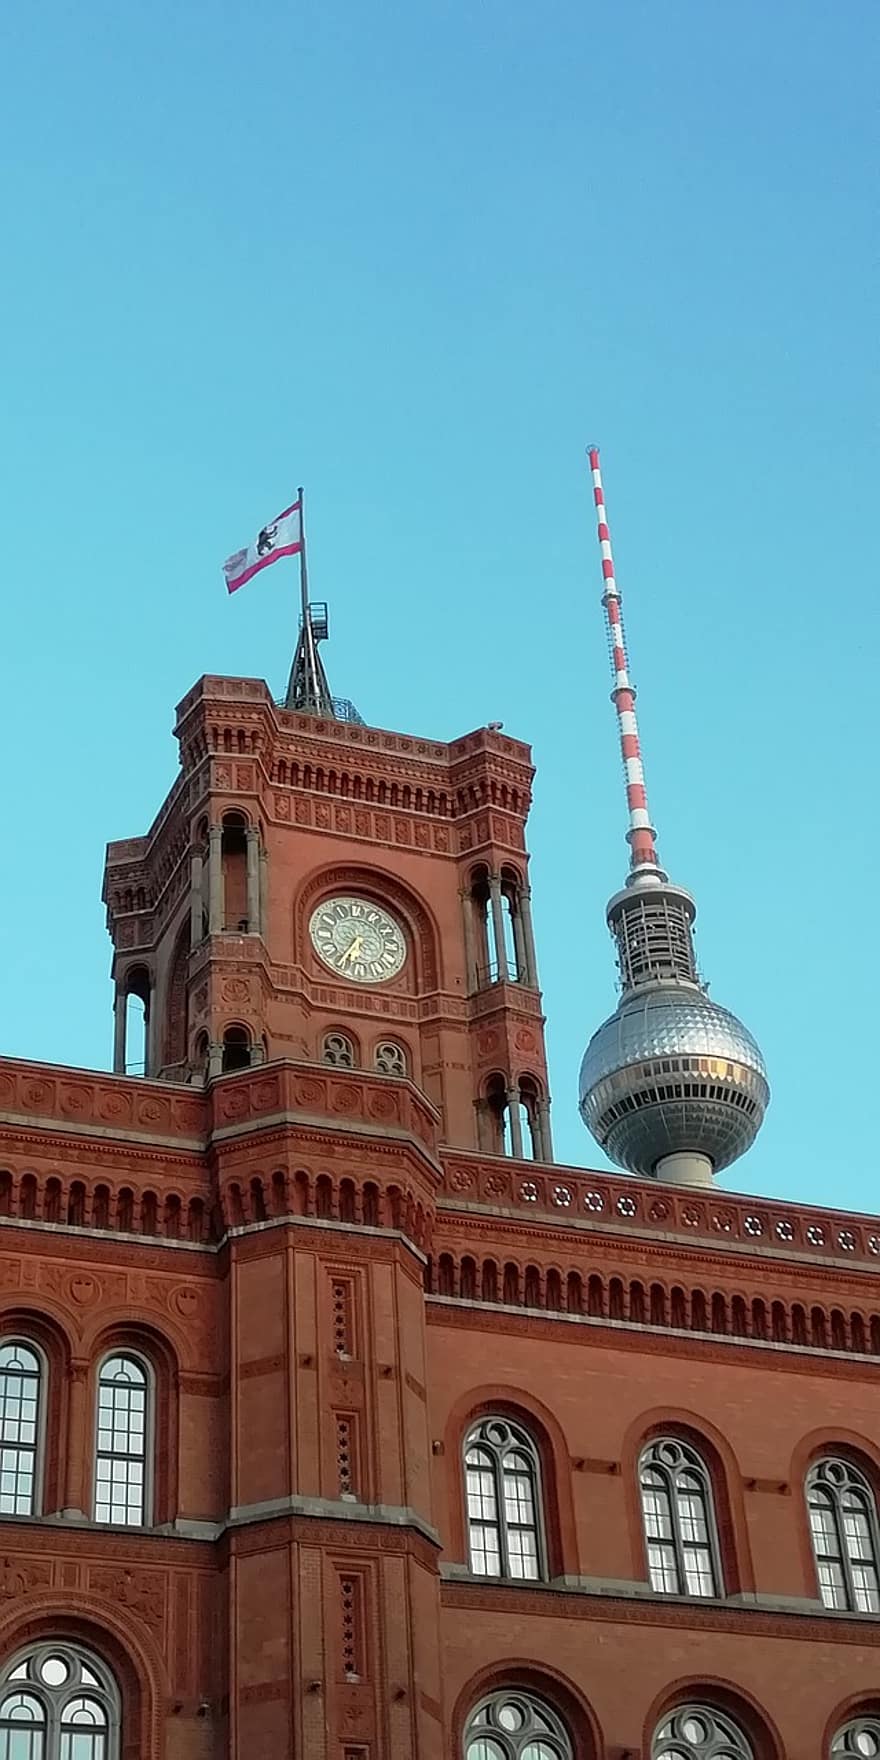 budova, architektura, hodinová věž, radnice, Berlín, červená radnice, televizní věž